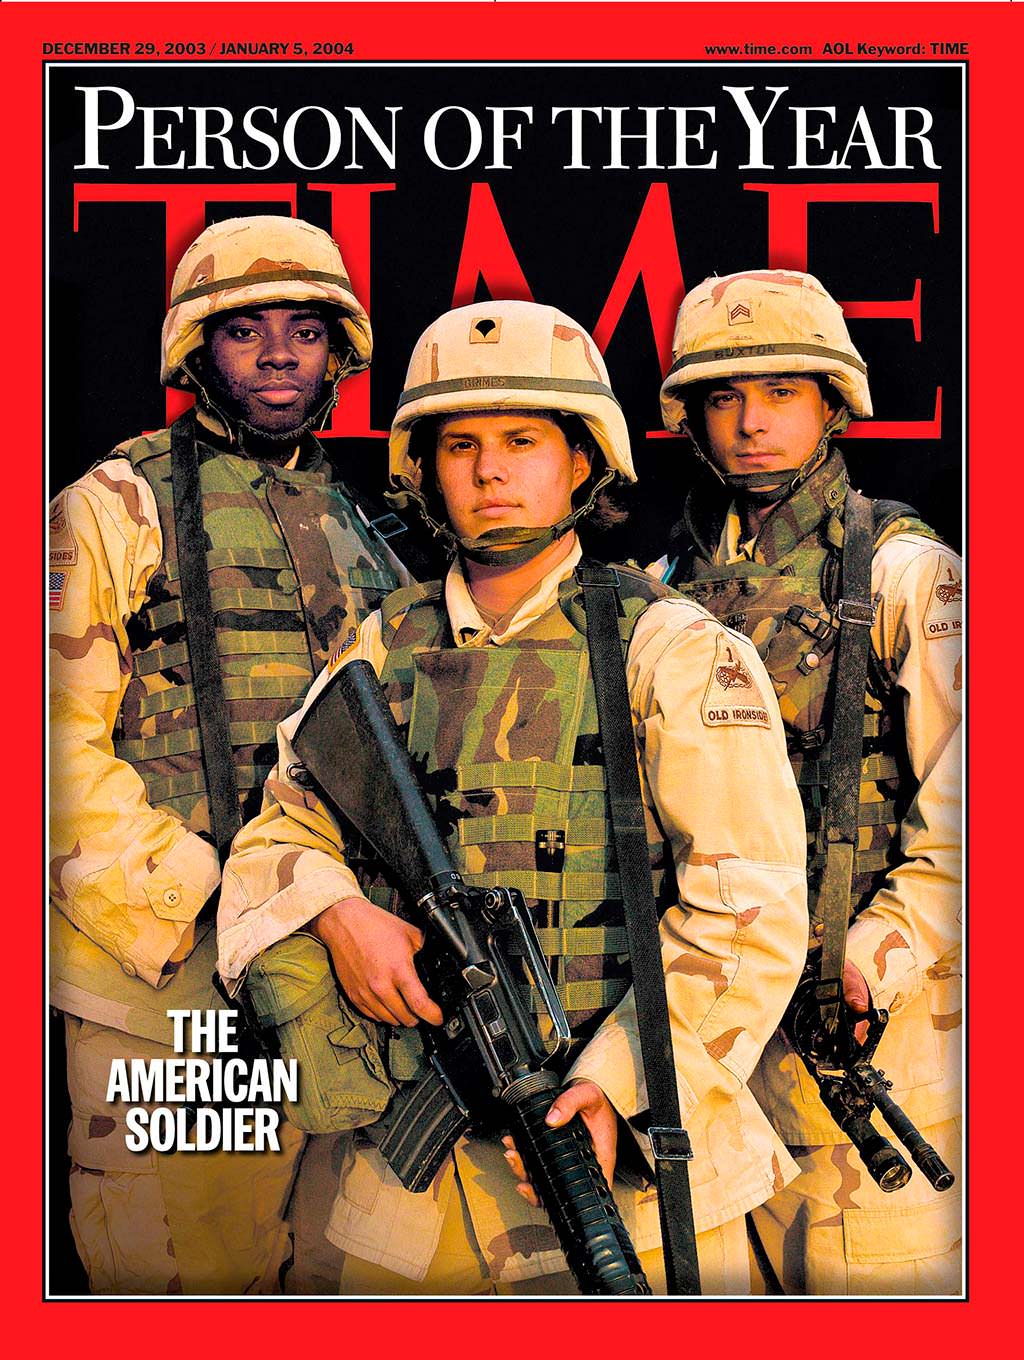 2003 год. Американский солдат на обложке Time